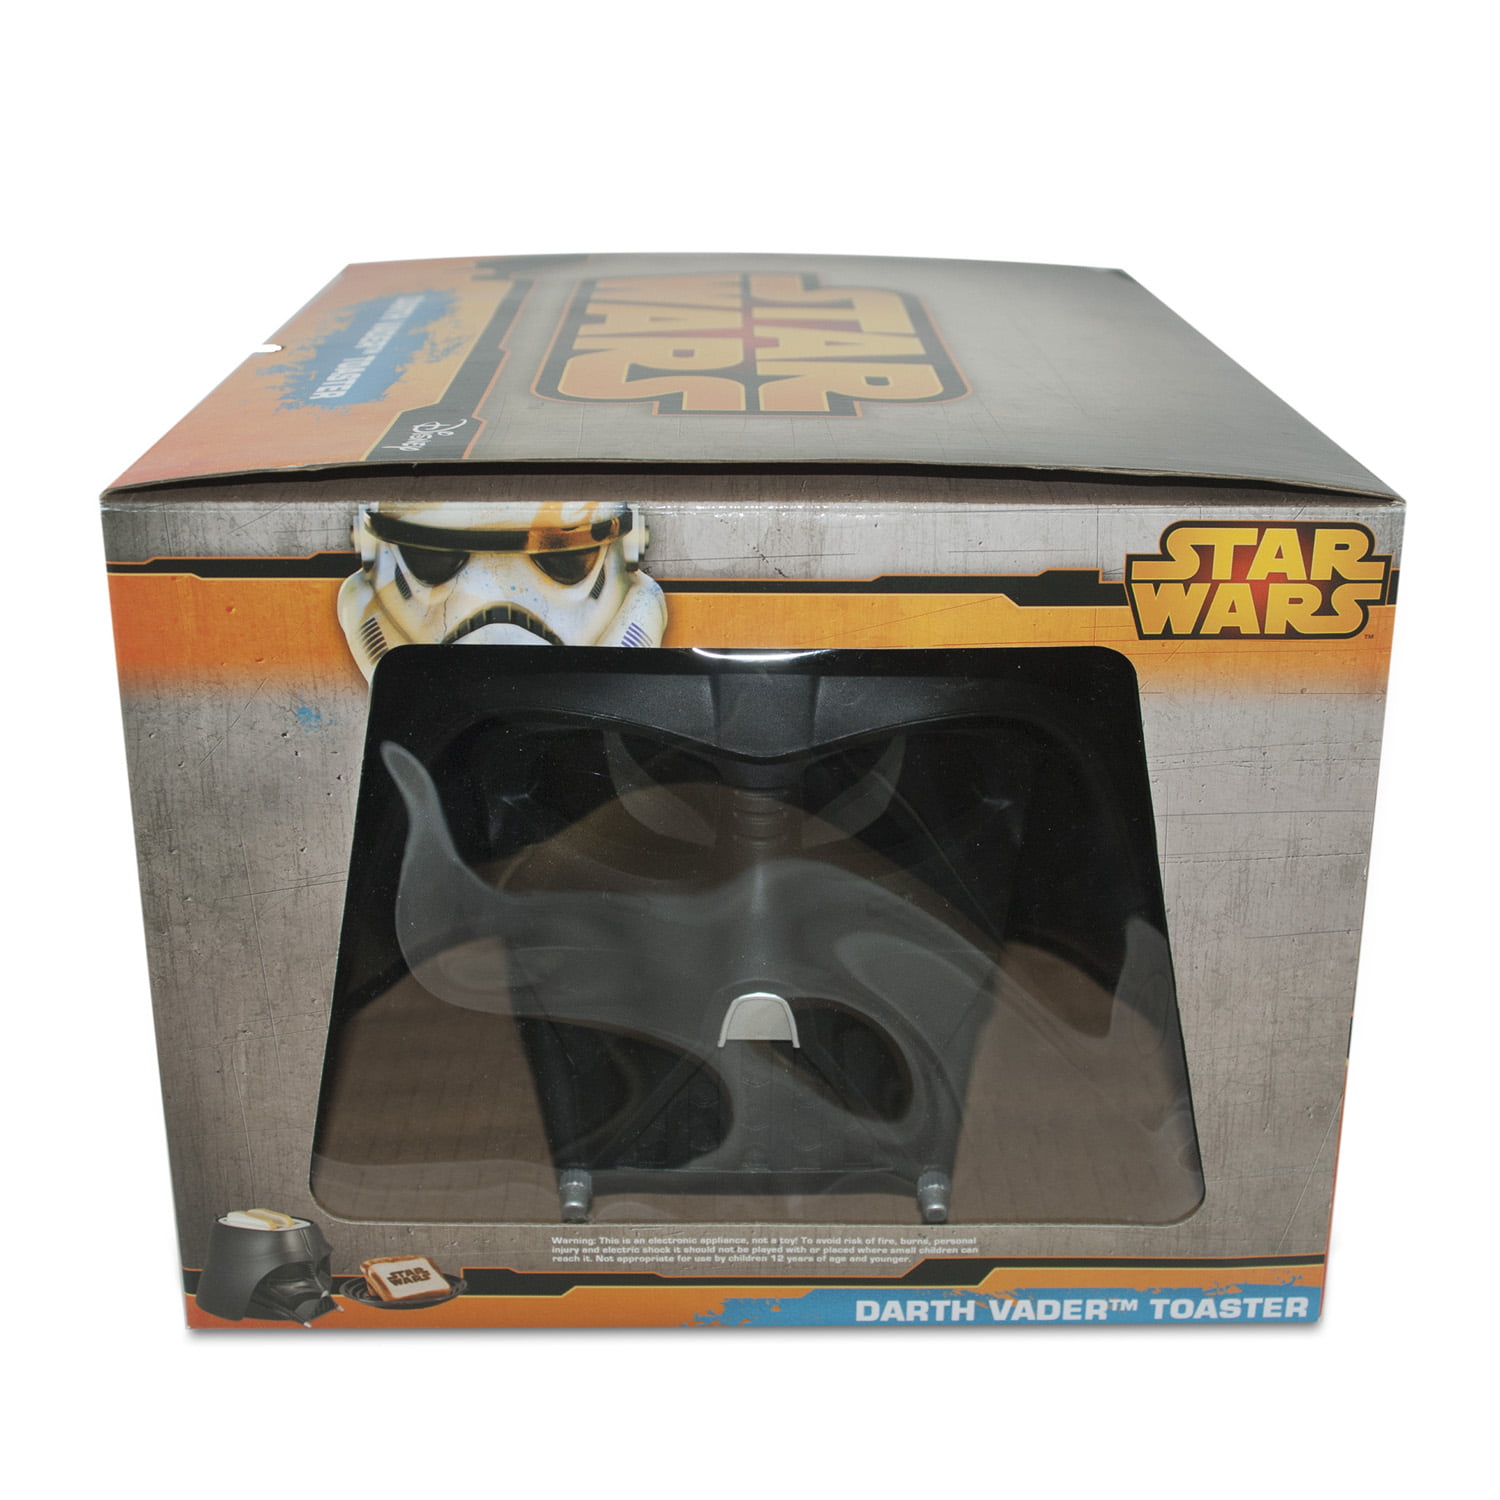 Star Wars Darth Vader Empire Toaster - 20034047